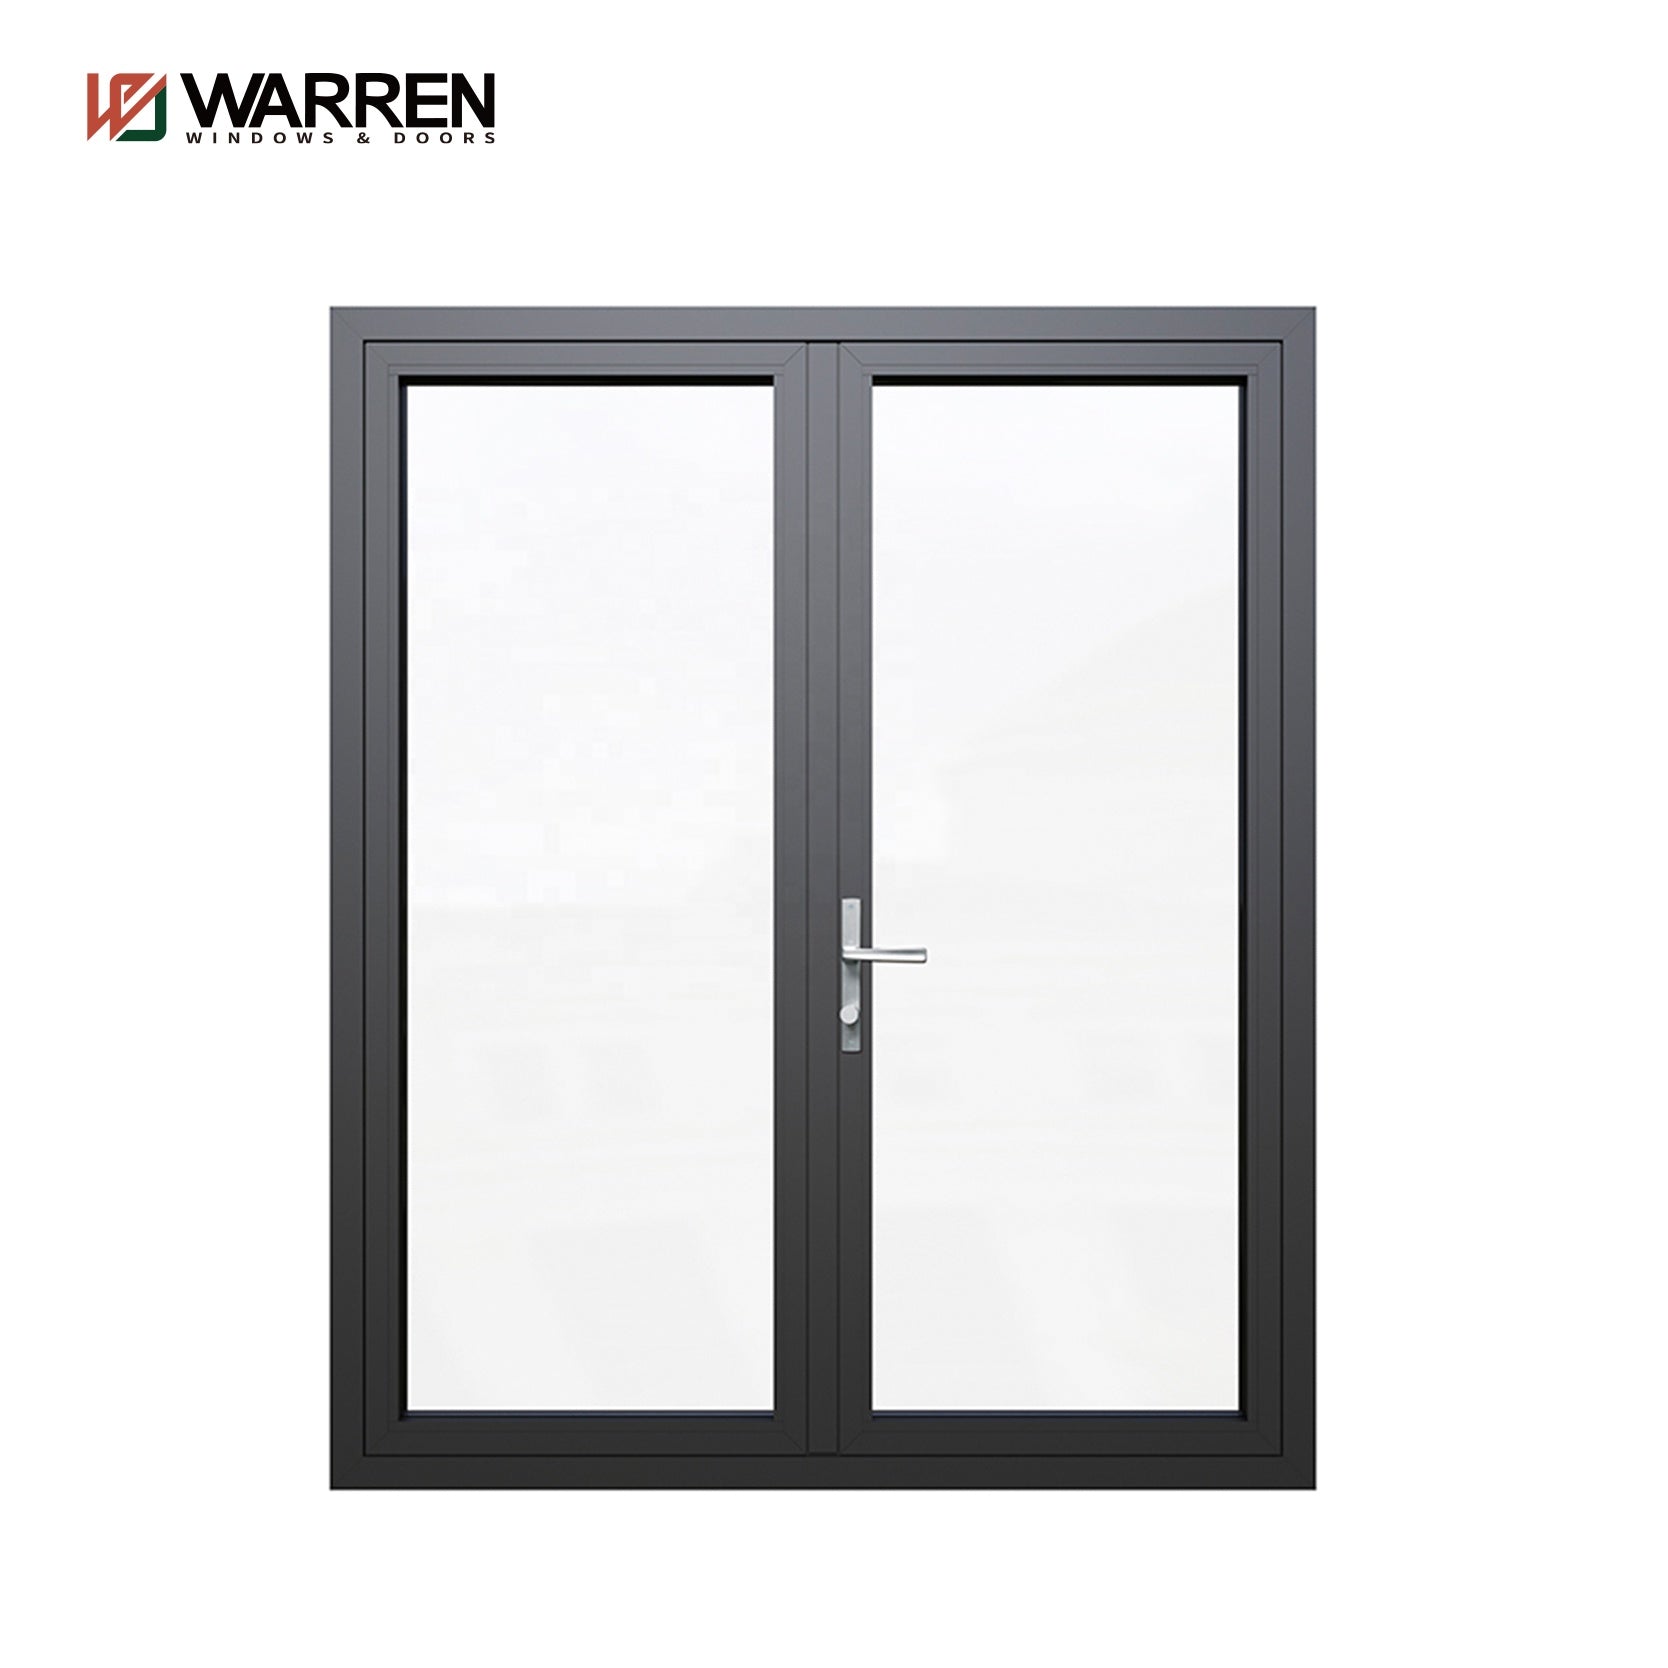 China Aluminum Door Handle, Aluminum Door Handle Wholesale